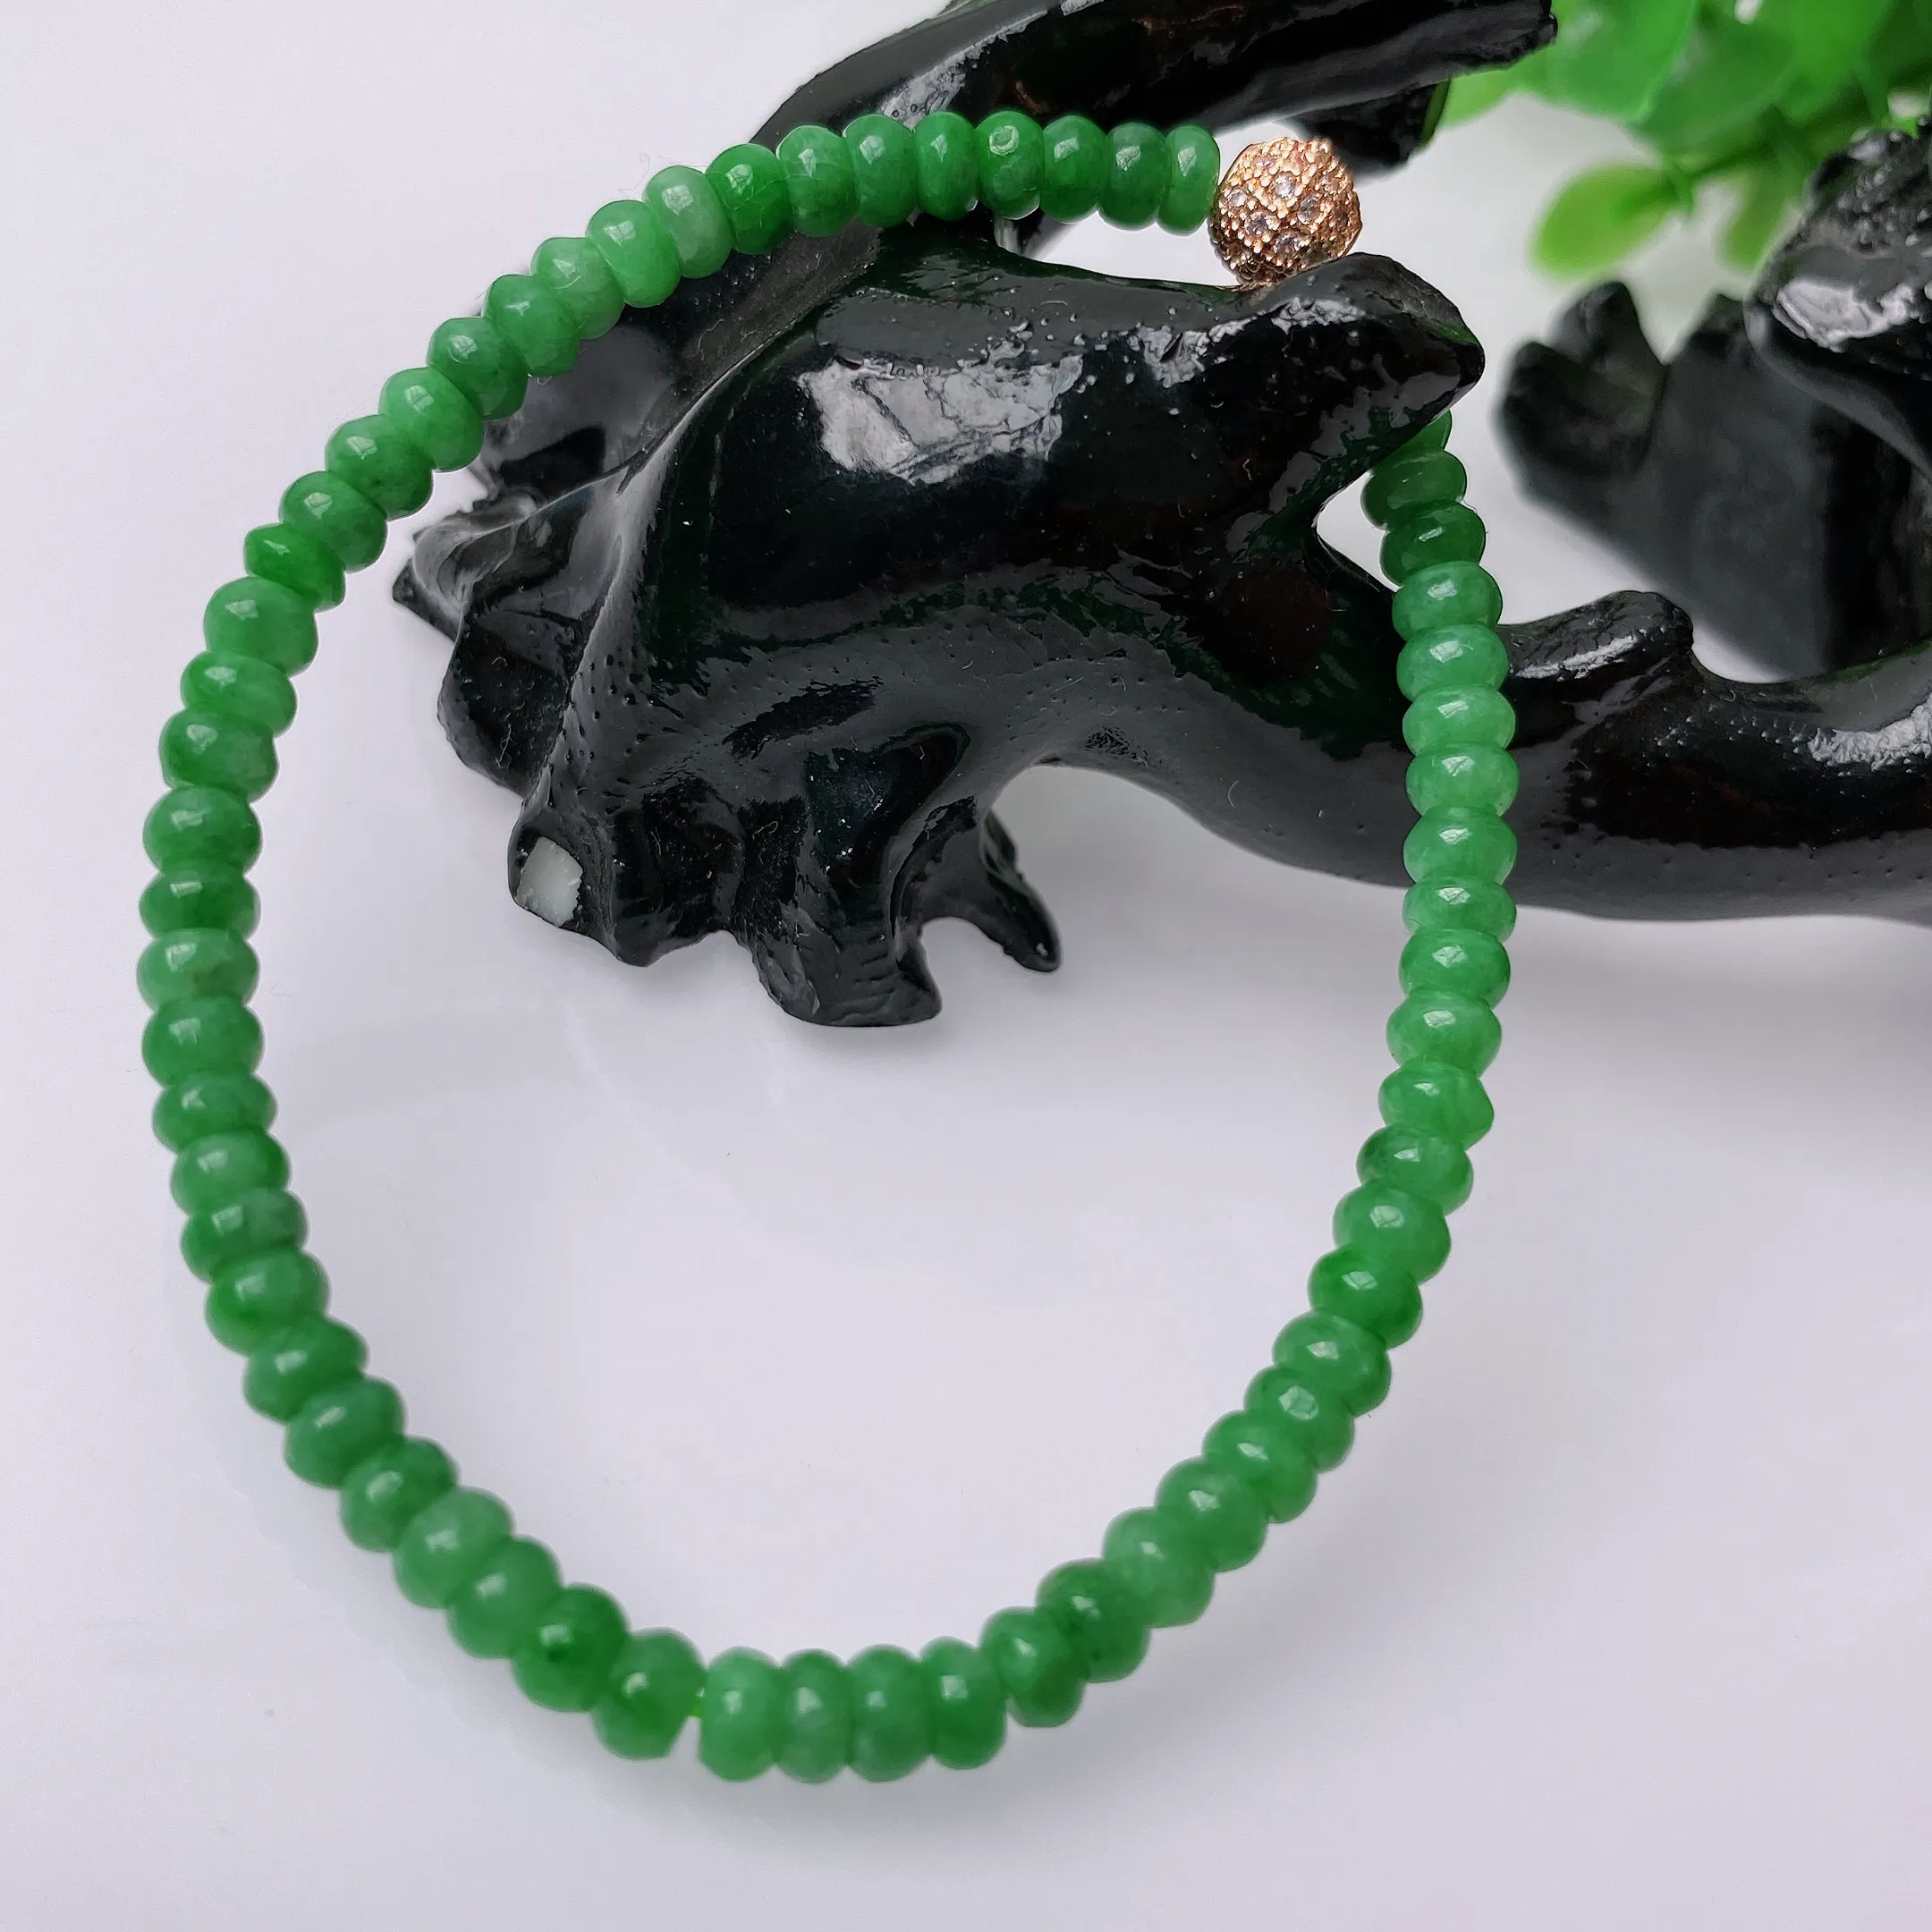 【超低价放漏】天然翡翠A货 绿色算盘珠手链 翡翠手串 种老水足，冰清玉润  颜色漂亮  取一尺寸2.8-4.3mm #5815#